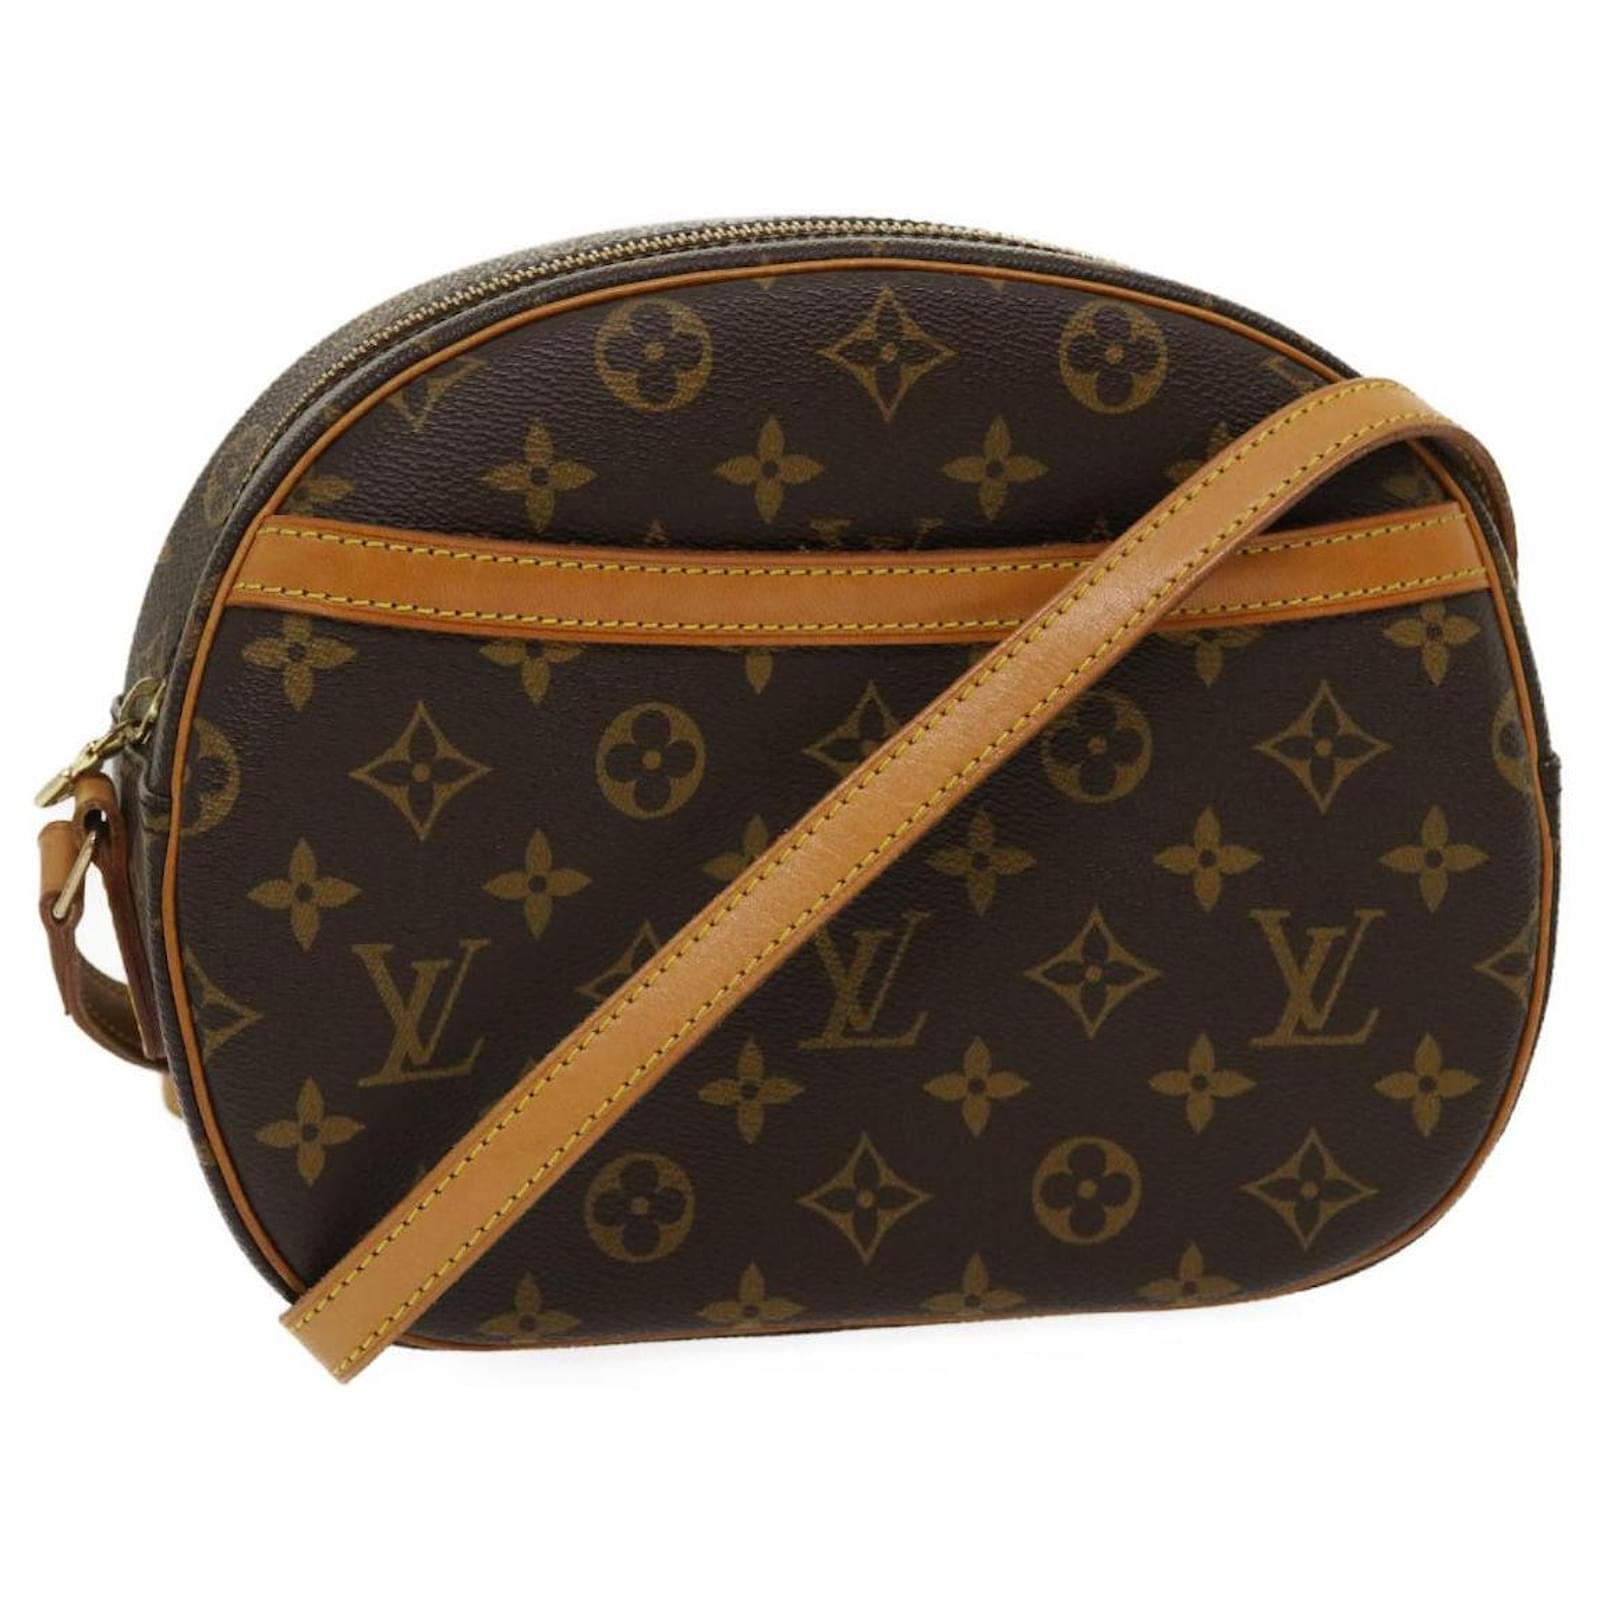 Authentic Louis Vuitton Blois Leather Crossbody Bag Monogram